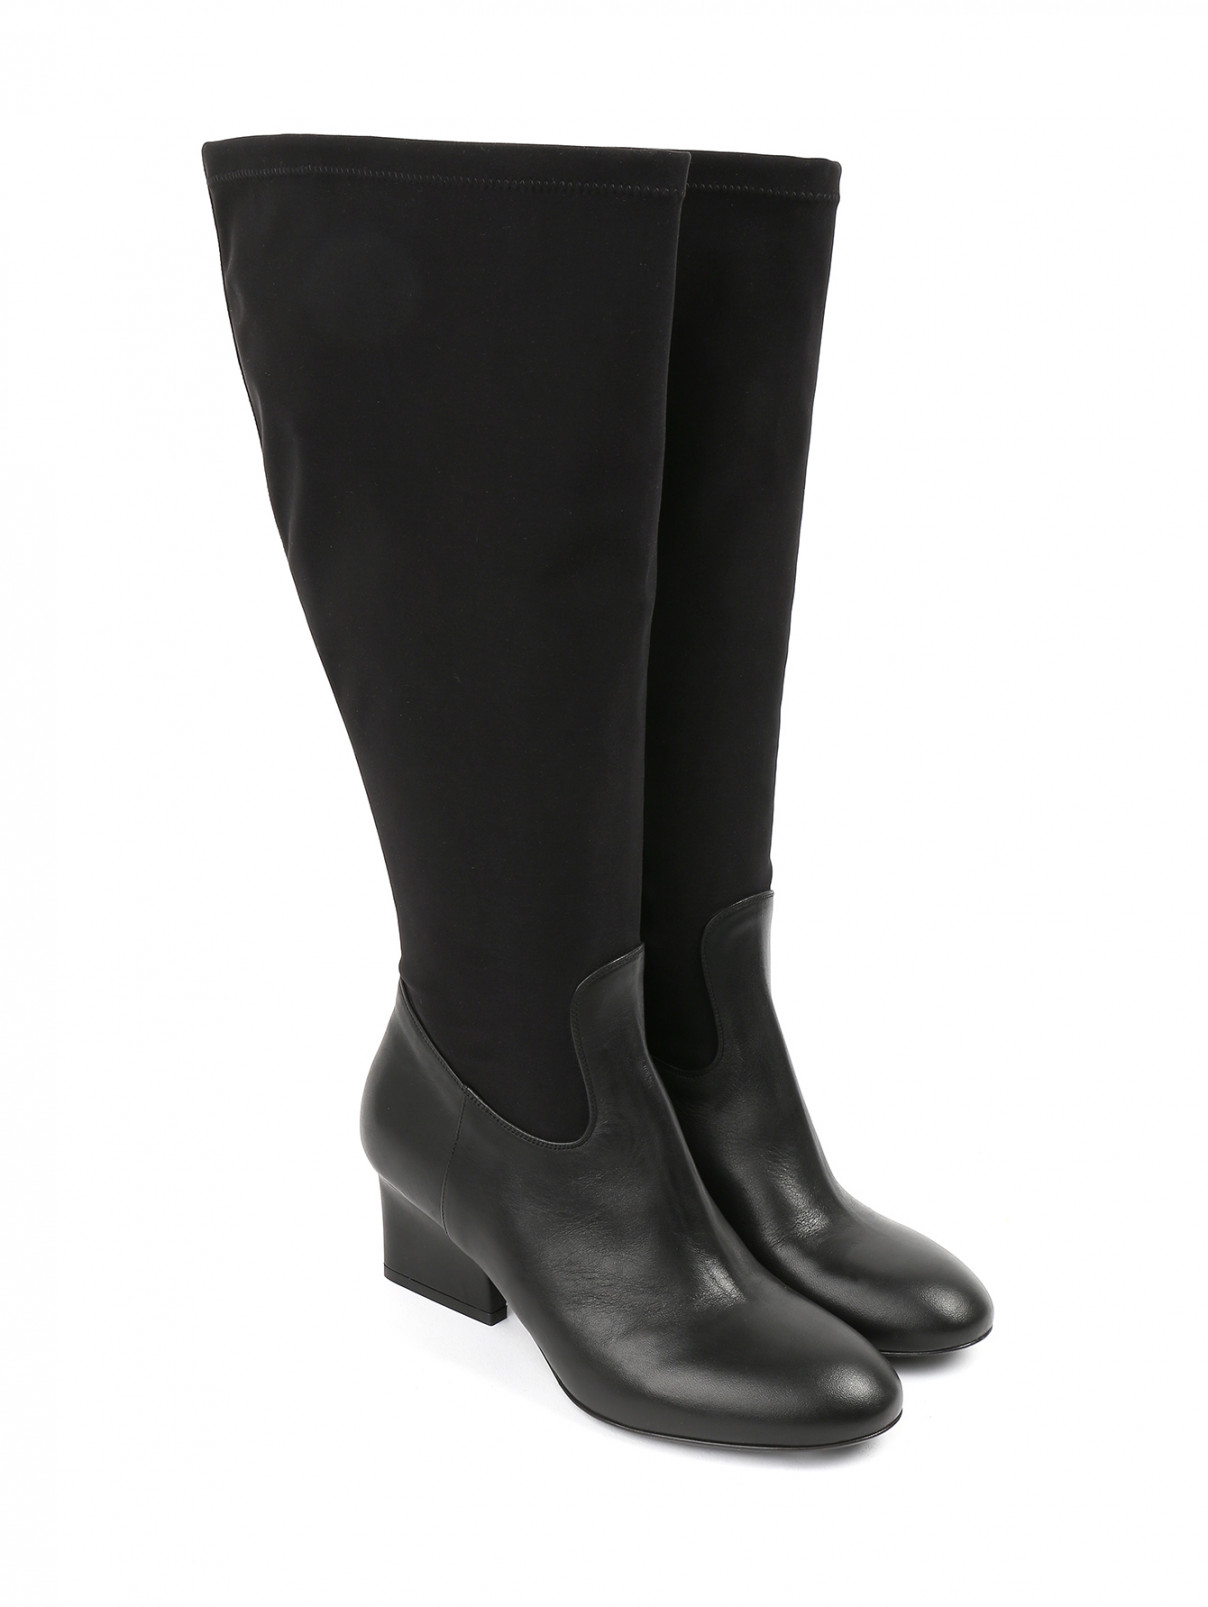 Высокие сапоги на устойчивом каблуке Marina Rinaldi  –  Общий вид  – Цвет:  Черный